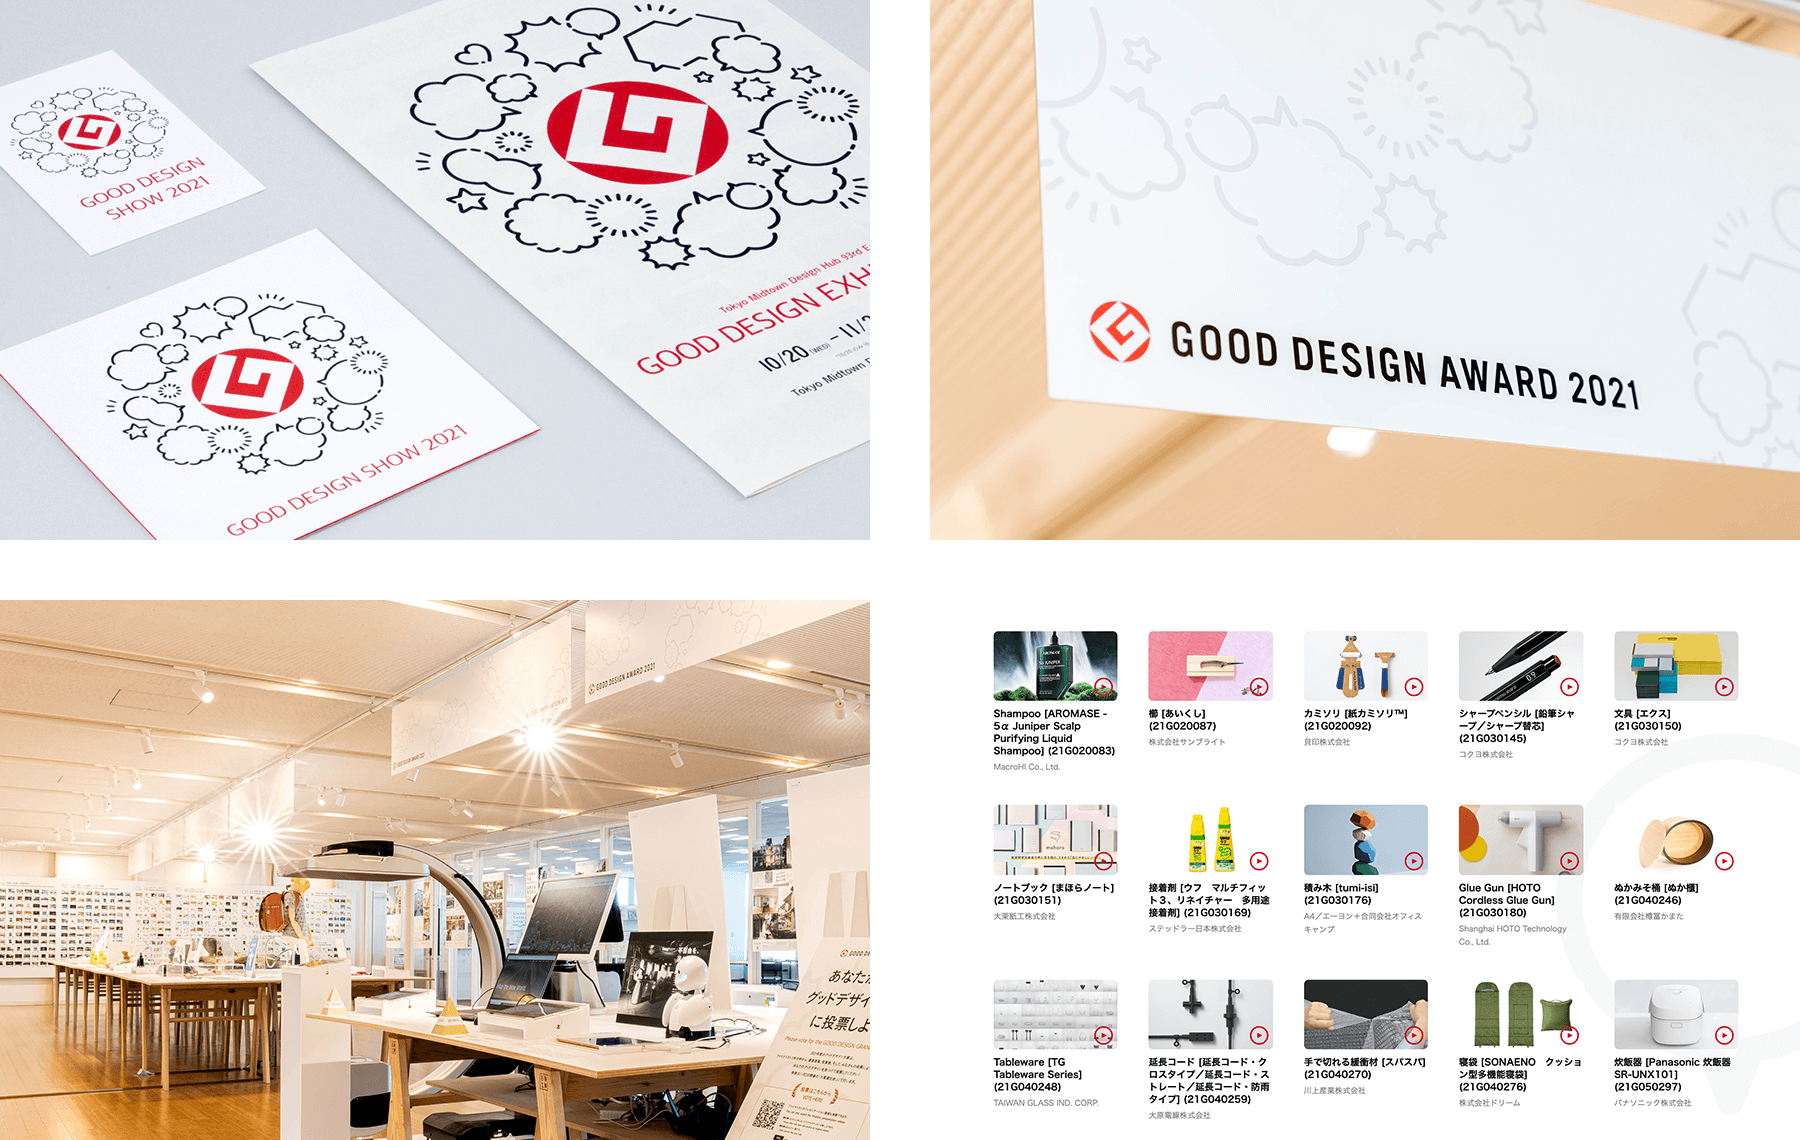 GOOD DESIGN SHOW 2021 / Main Visual Design & Website